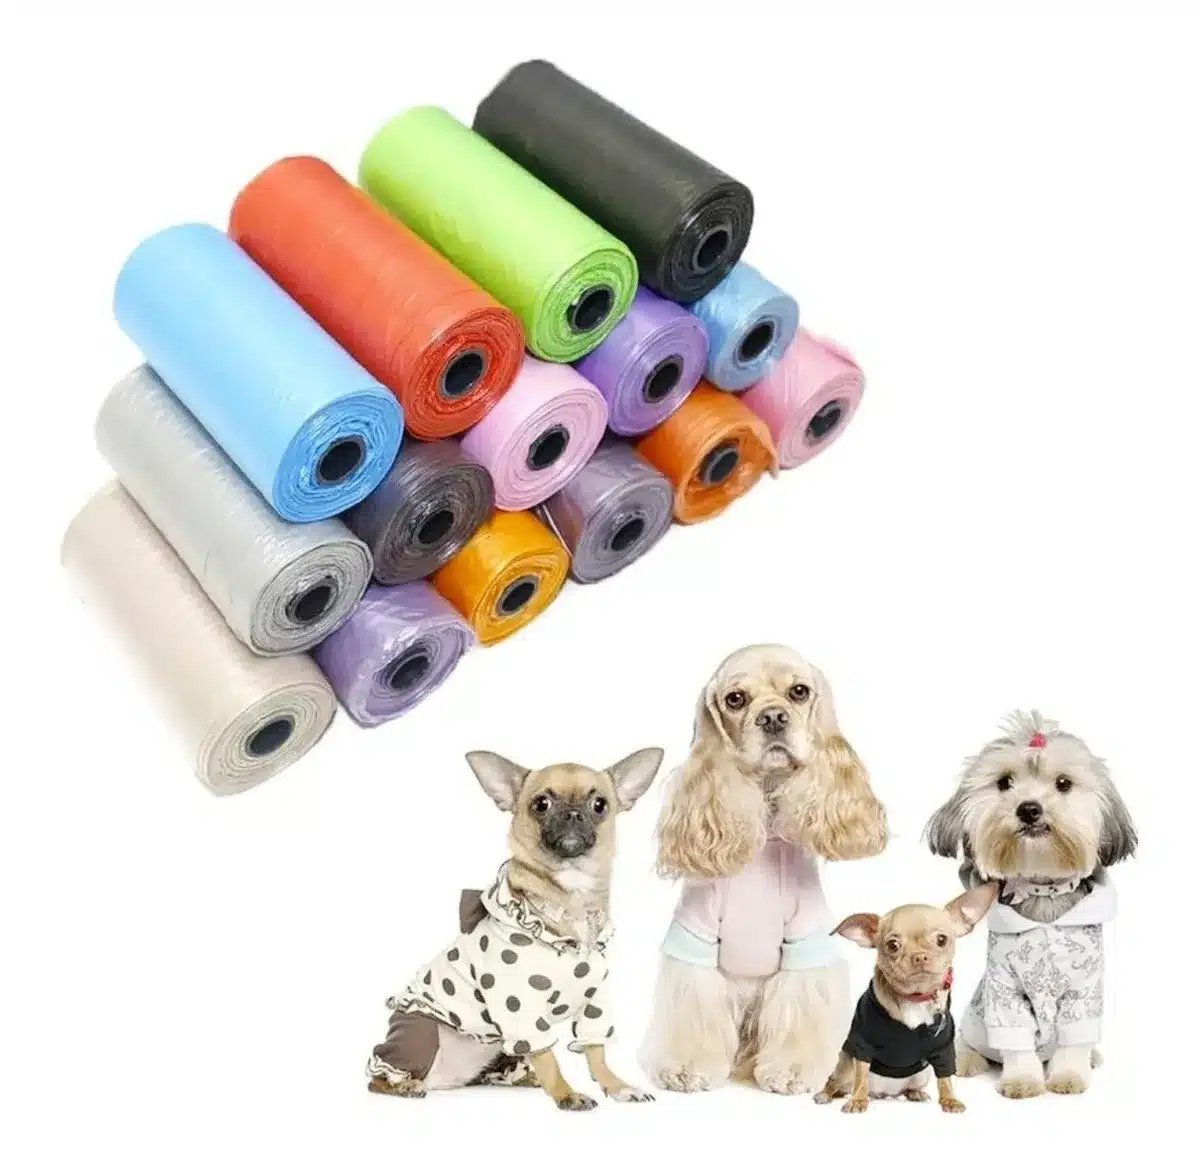  Bolsa para excrementos de perro, 2 rollos con 1 dispensador,  bolsas de recogida fácil de quitar para limpieza de residuos, suministros  para mascotas, reemplazo de rollos para perros al aire libre